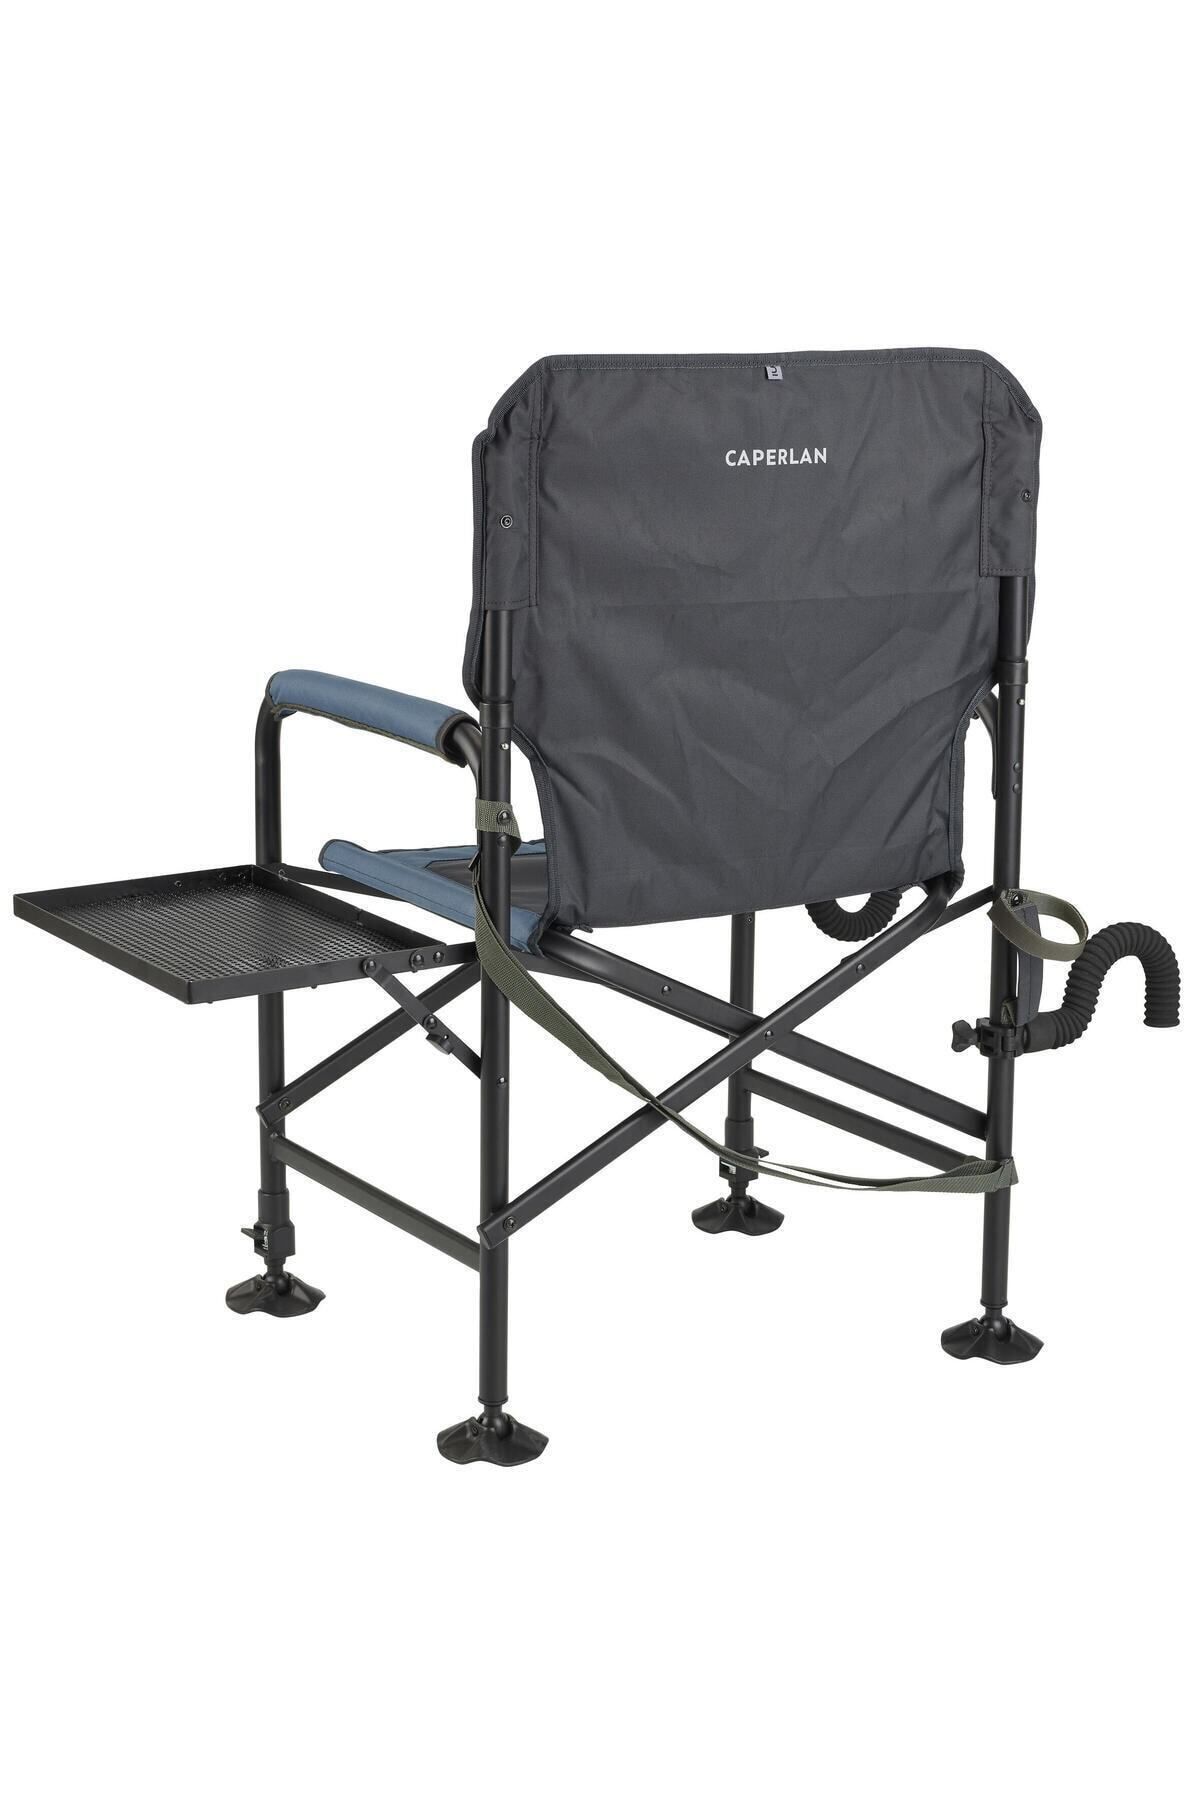 Decathlon Caperlan Sehpalı Katlanır Kamp Sandalyesi - Balıkçılık - Essenseat 500 Adjust